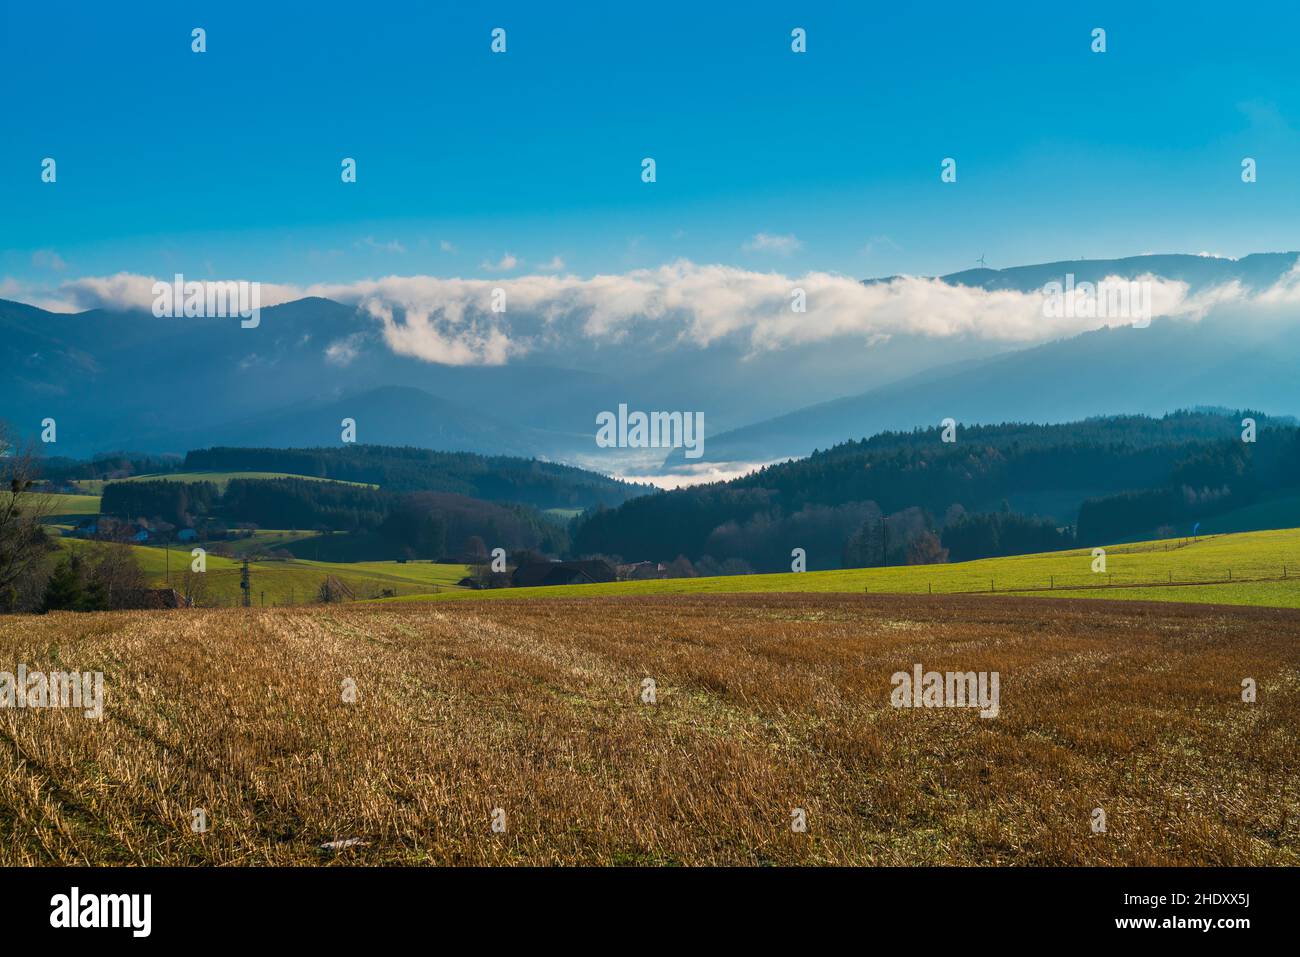 Alemania, Selva negra panorama naturaleza paisaje de nubes niebla en el valle en el día soleado en la región turística perfecto para el senderismo Foto de stock